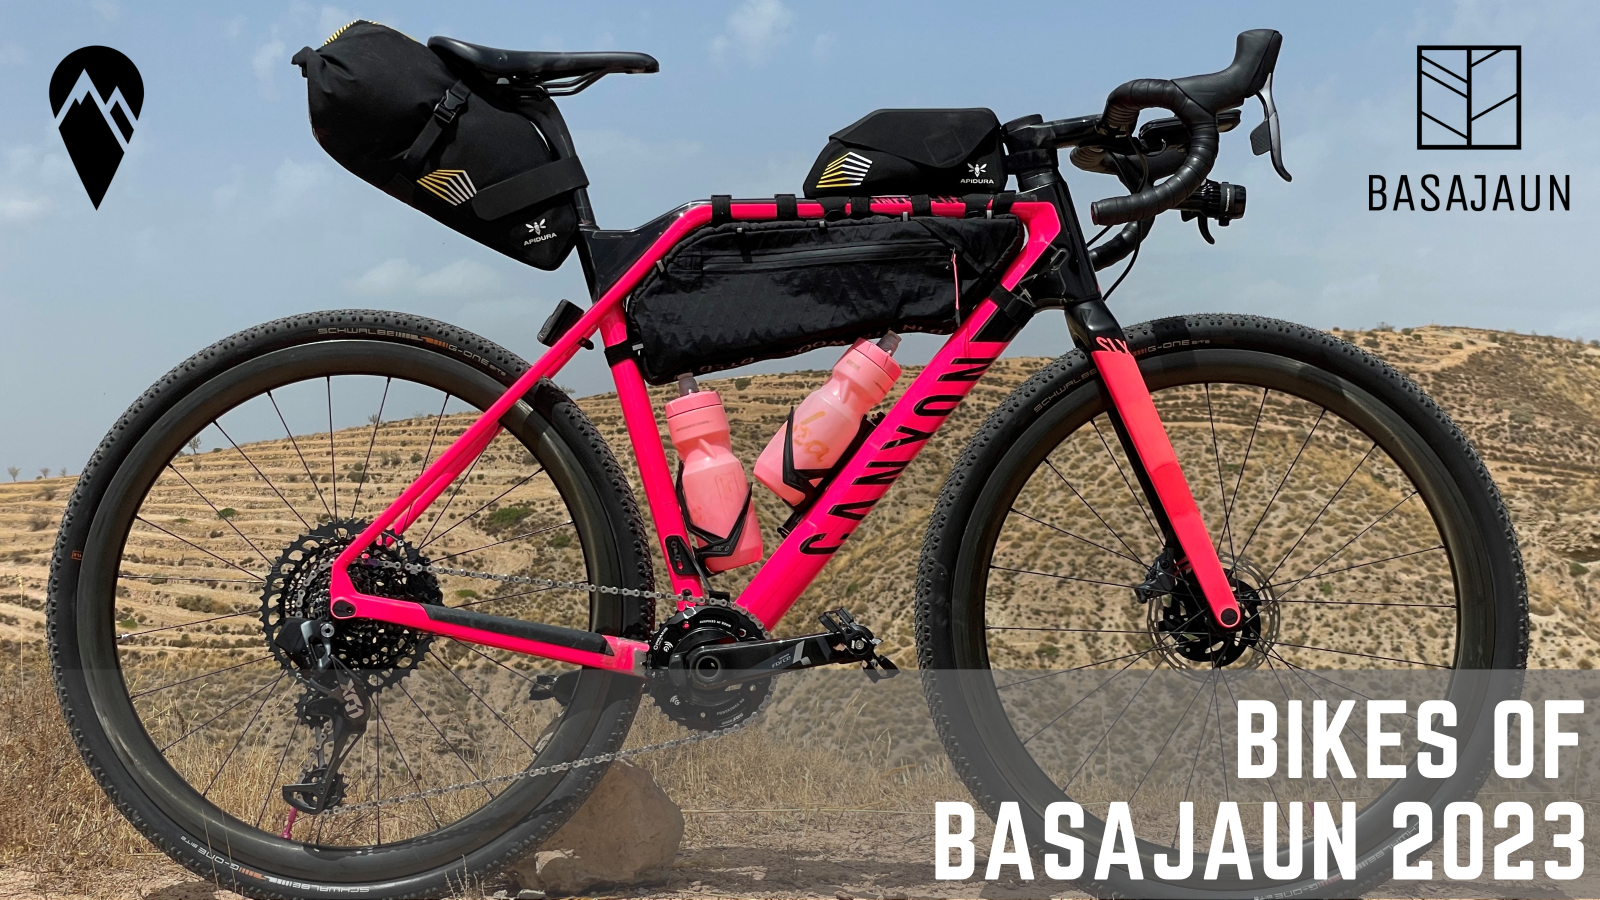 Bikes of Basajaun 2023